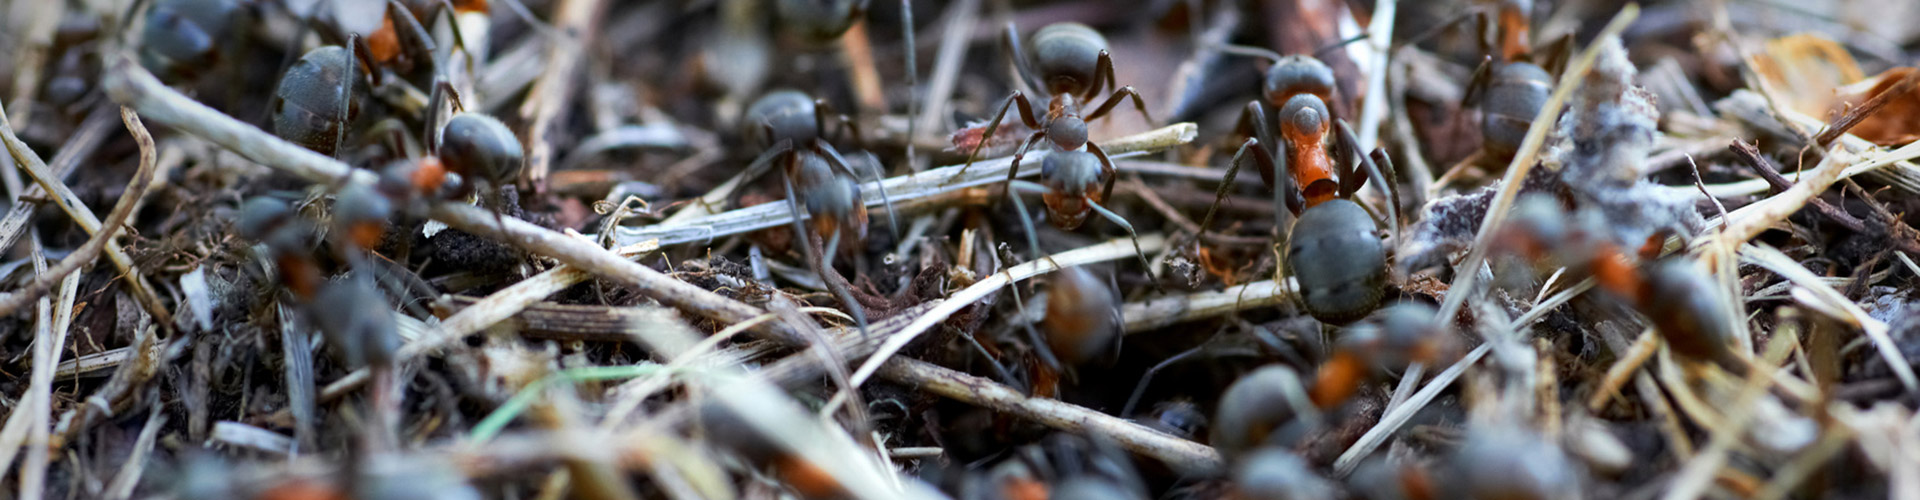 Nagerbekämpfung, Taubenabwehr, Wespenbekämpfung - Dies sind die Kompetenzen von Schädlingbekämpfer Gürtler.